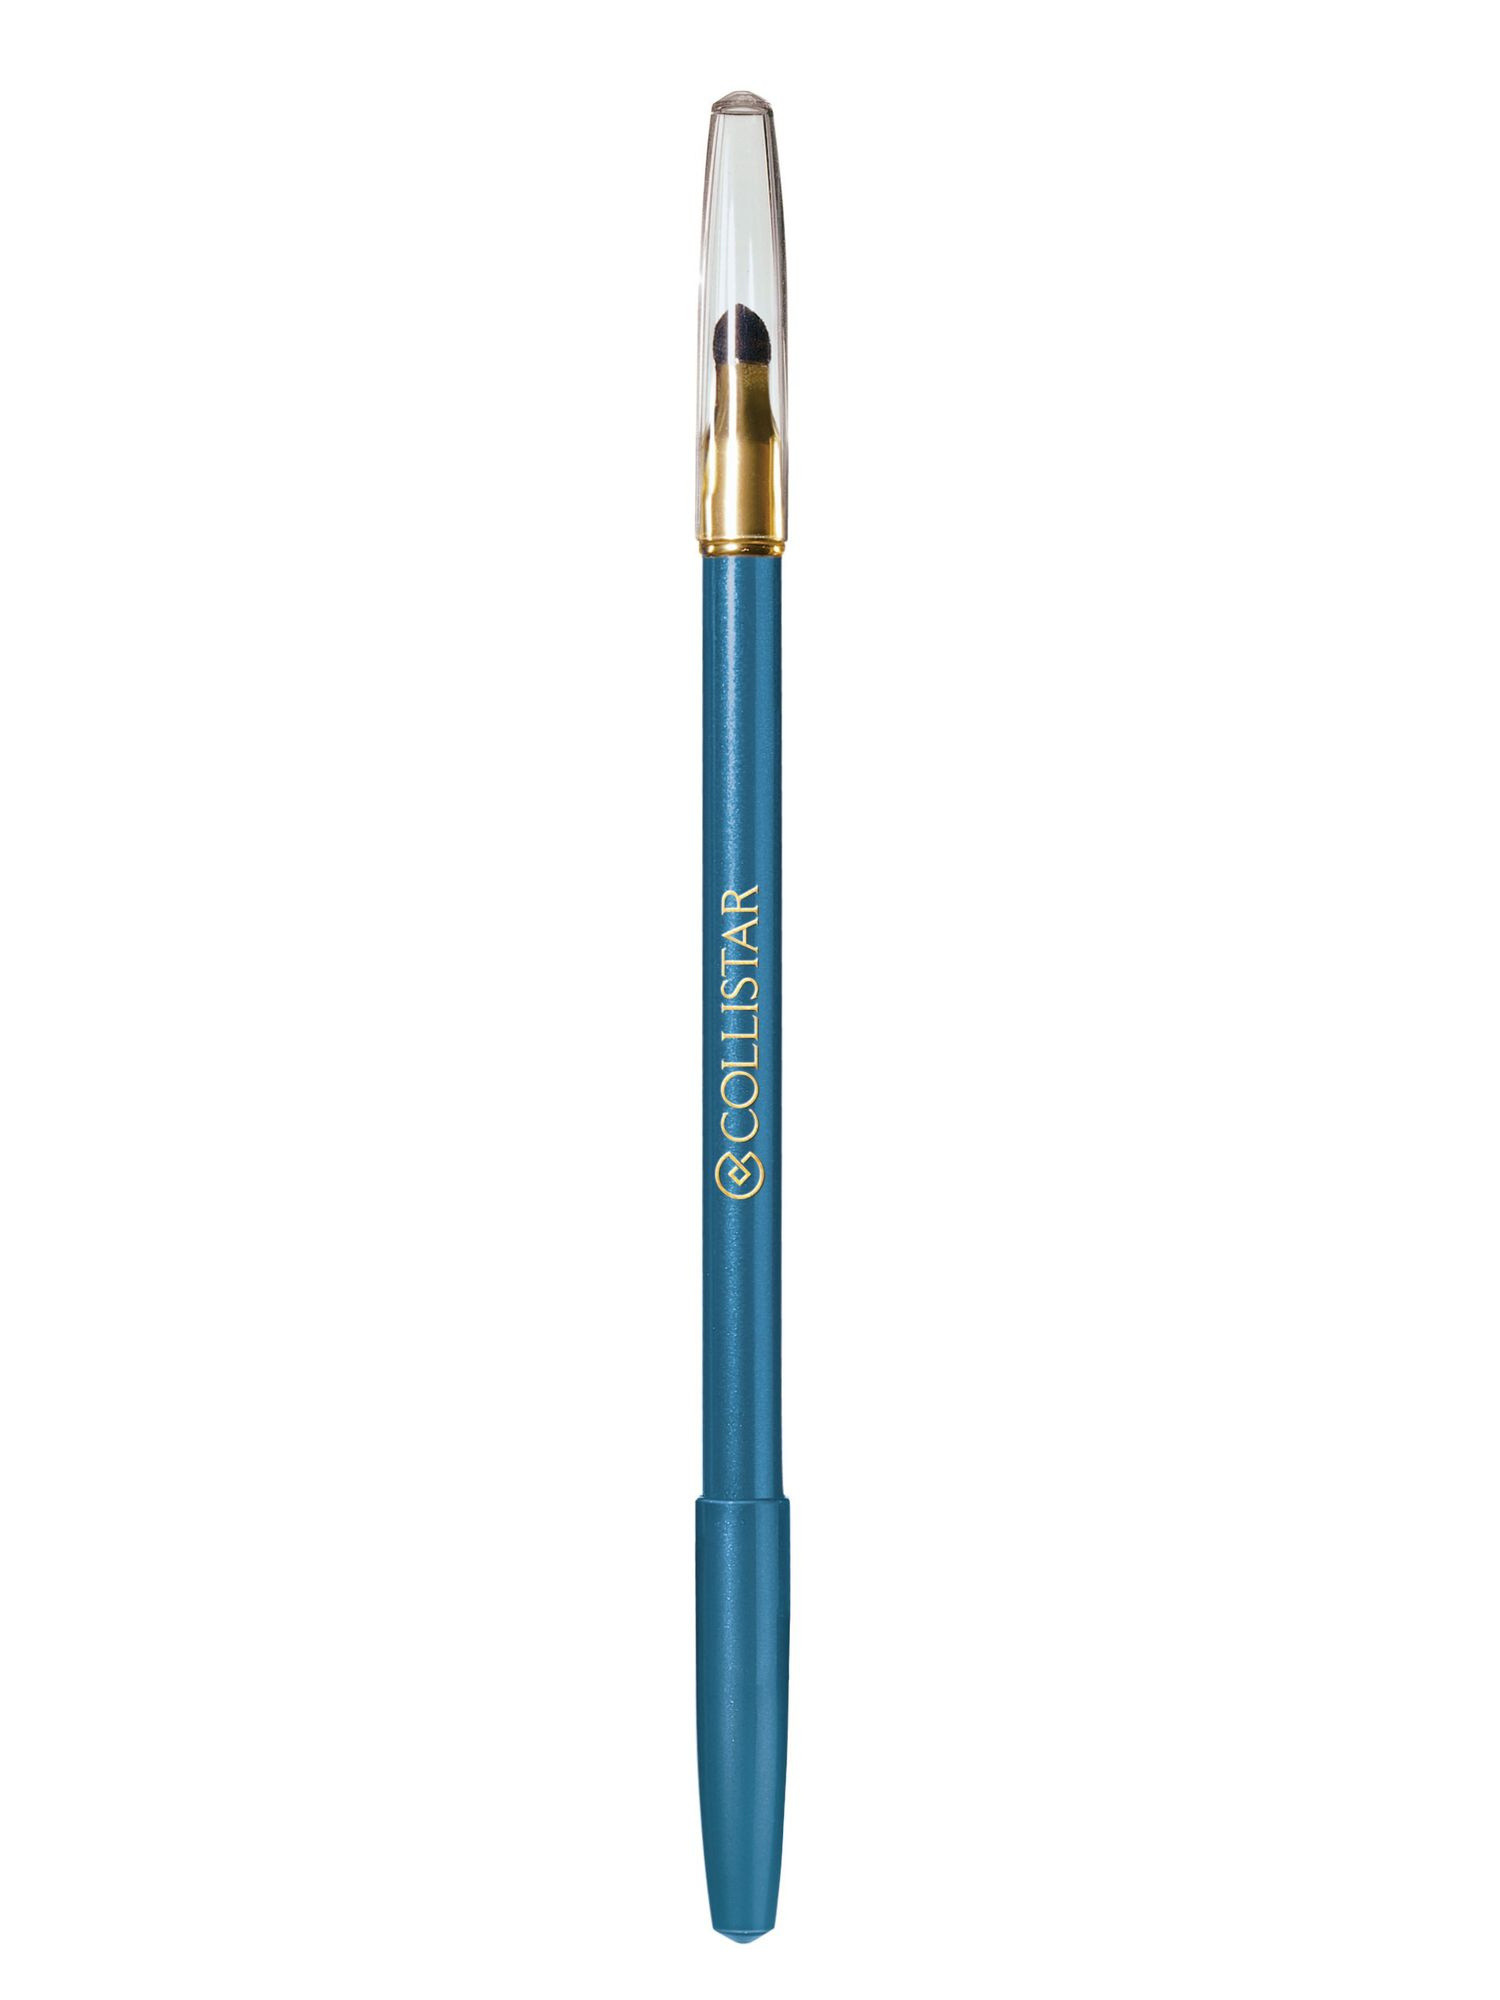 Professional eye pencil, 8 Cobalt Blue, large image number 0